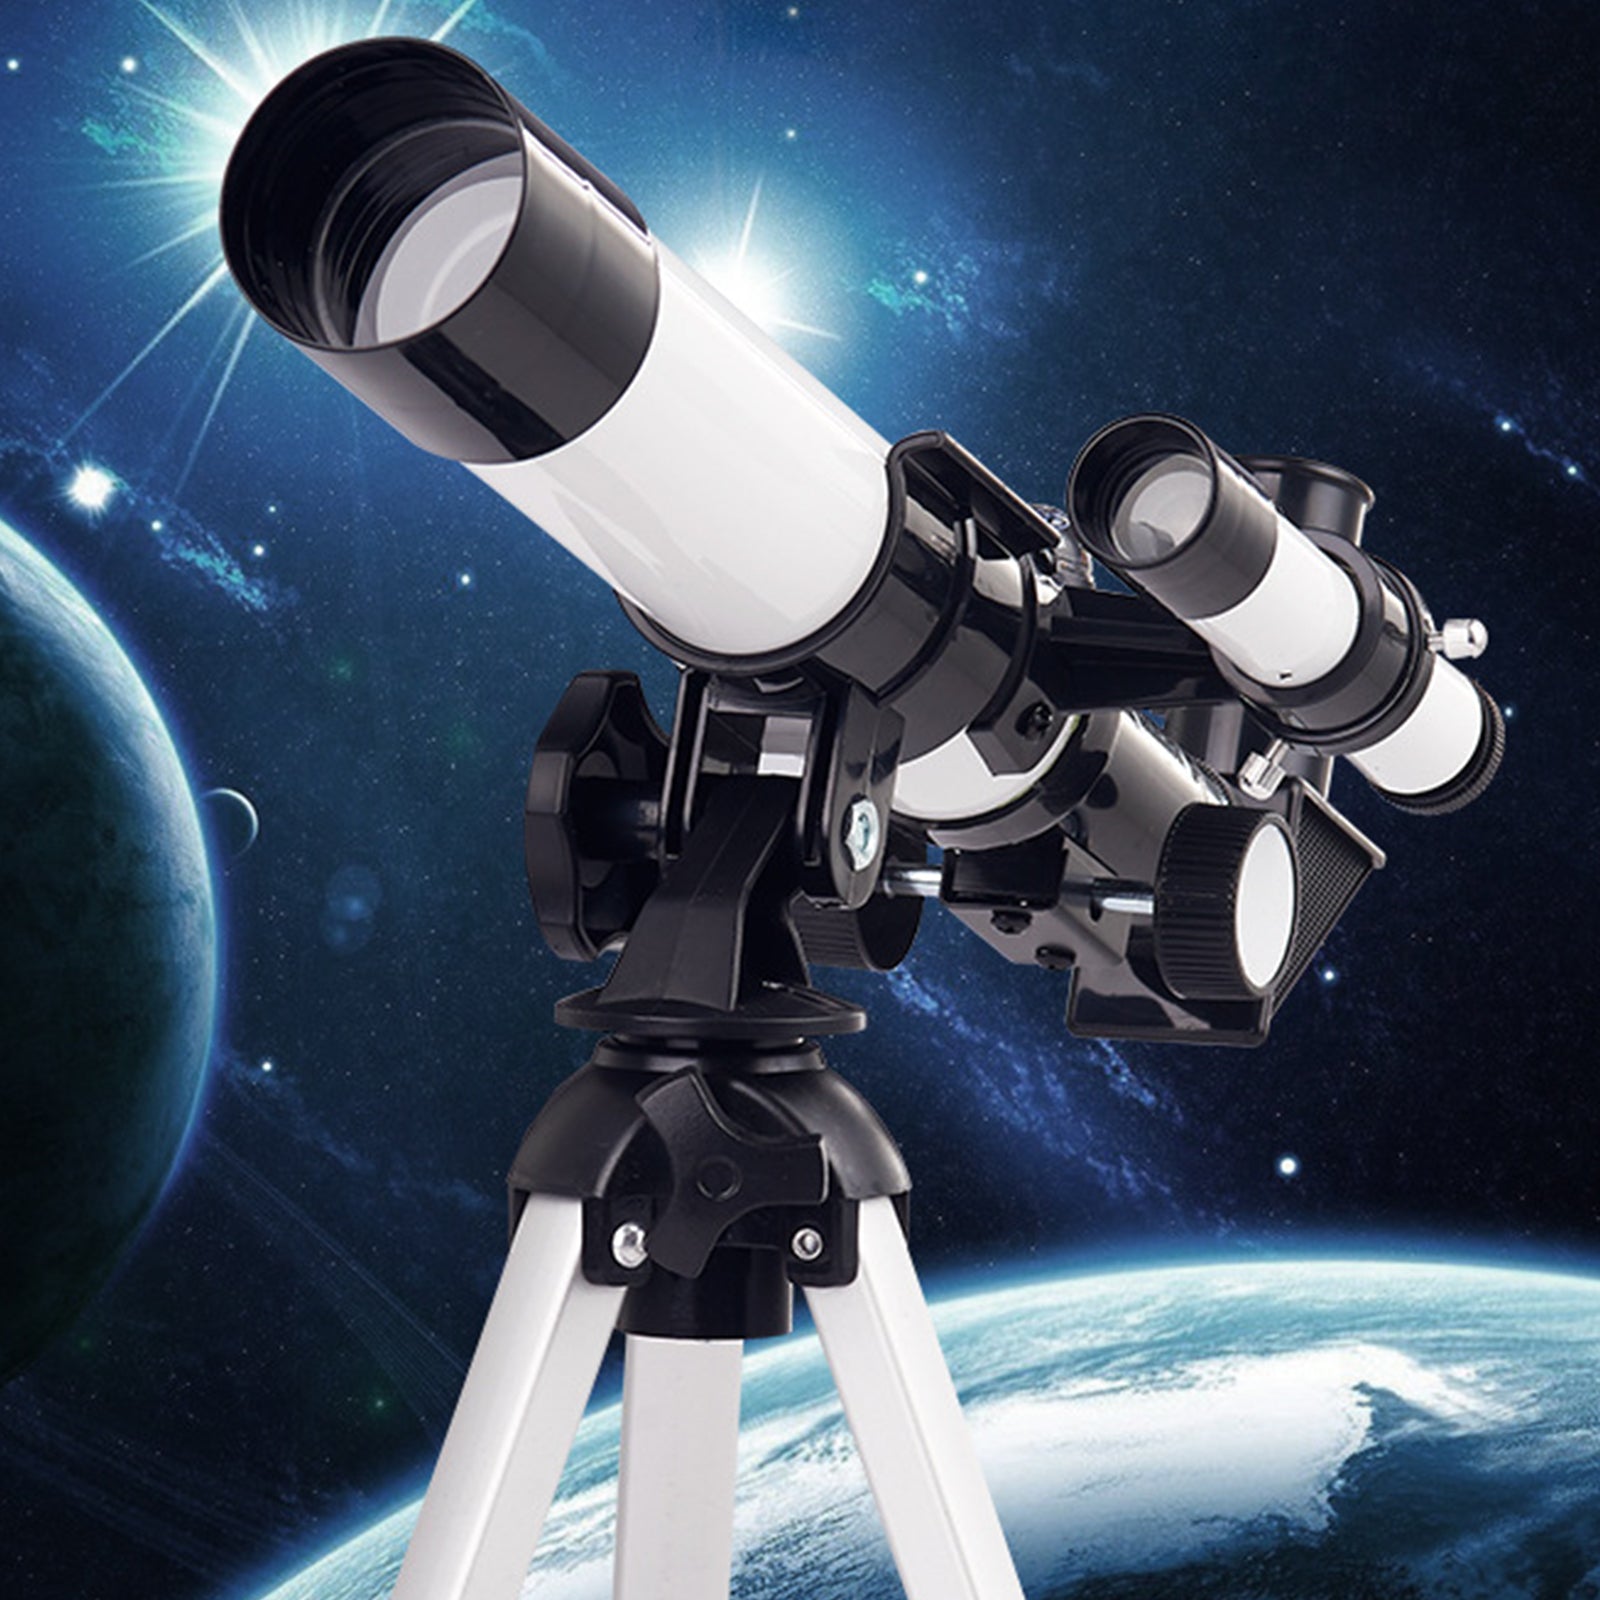 Téléscope astronomique